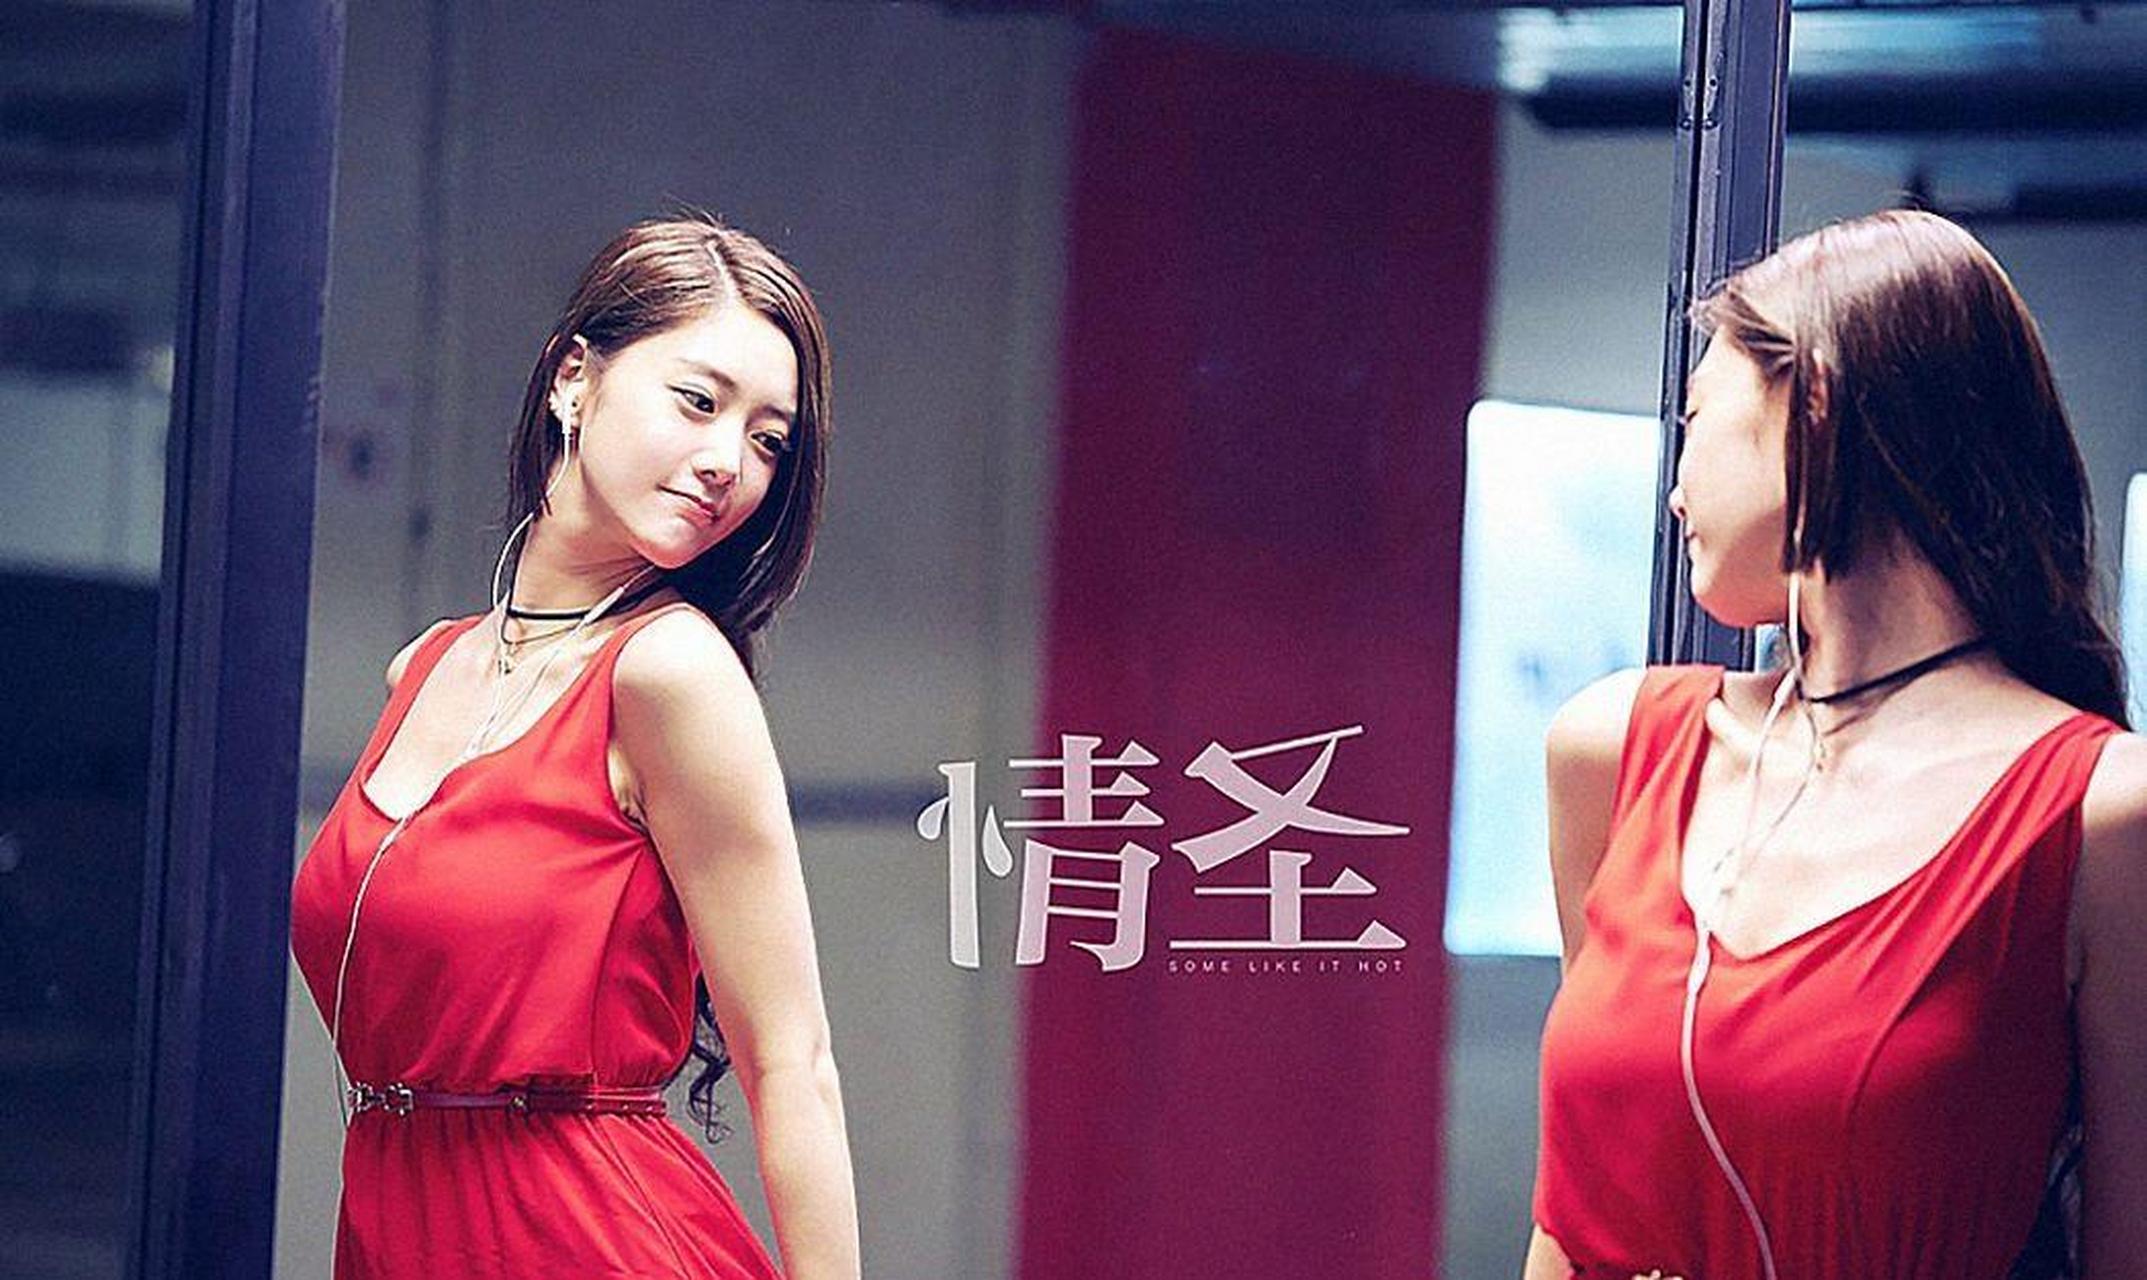 克拉拉:一袭红裙火遍天 风情迷人甲天下 亚洲第一美女李成敏 组图